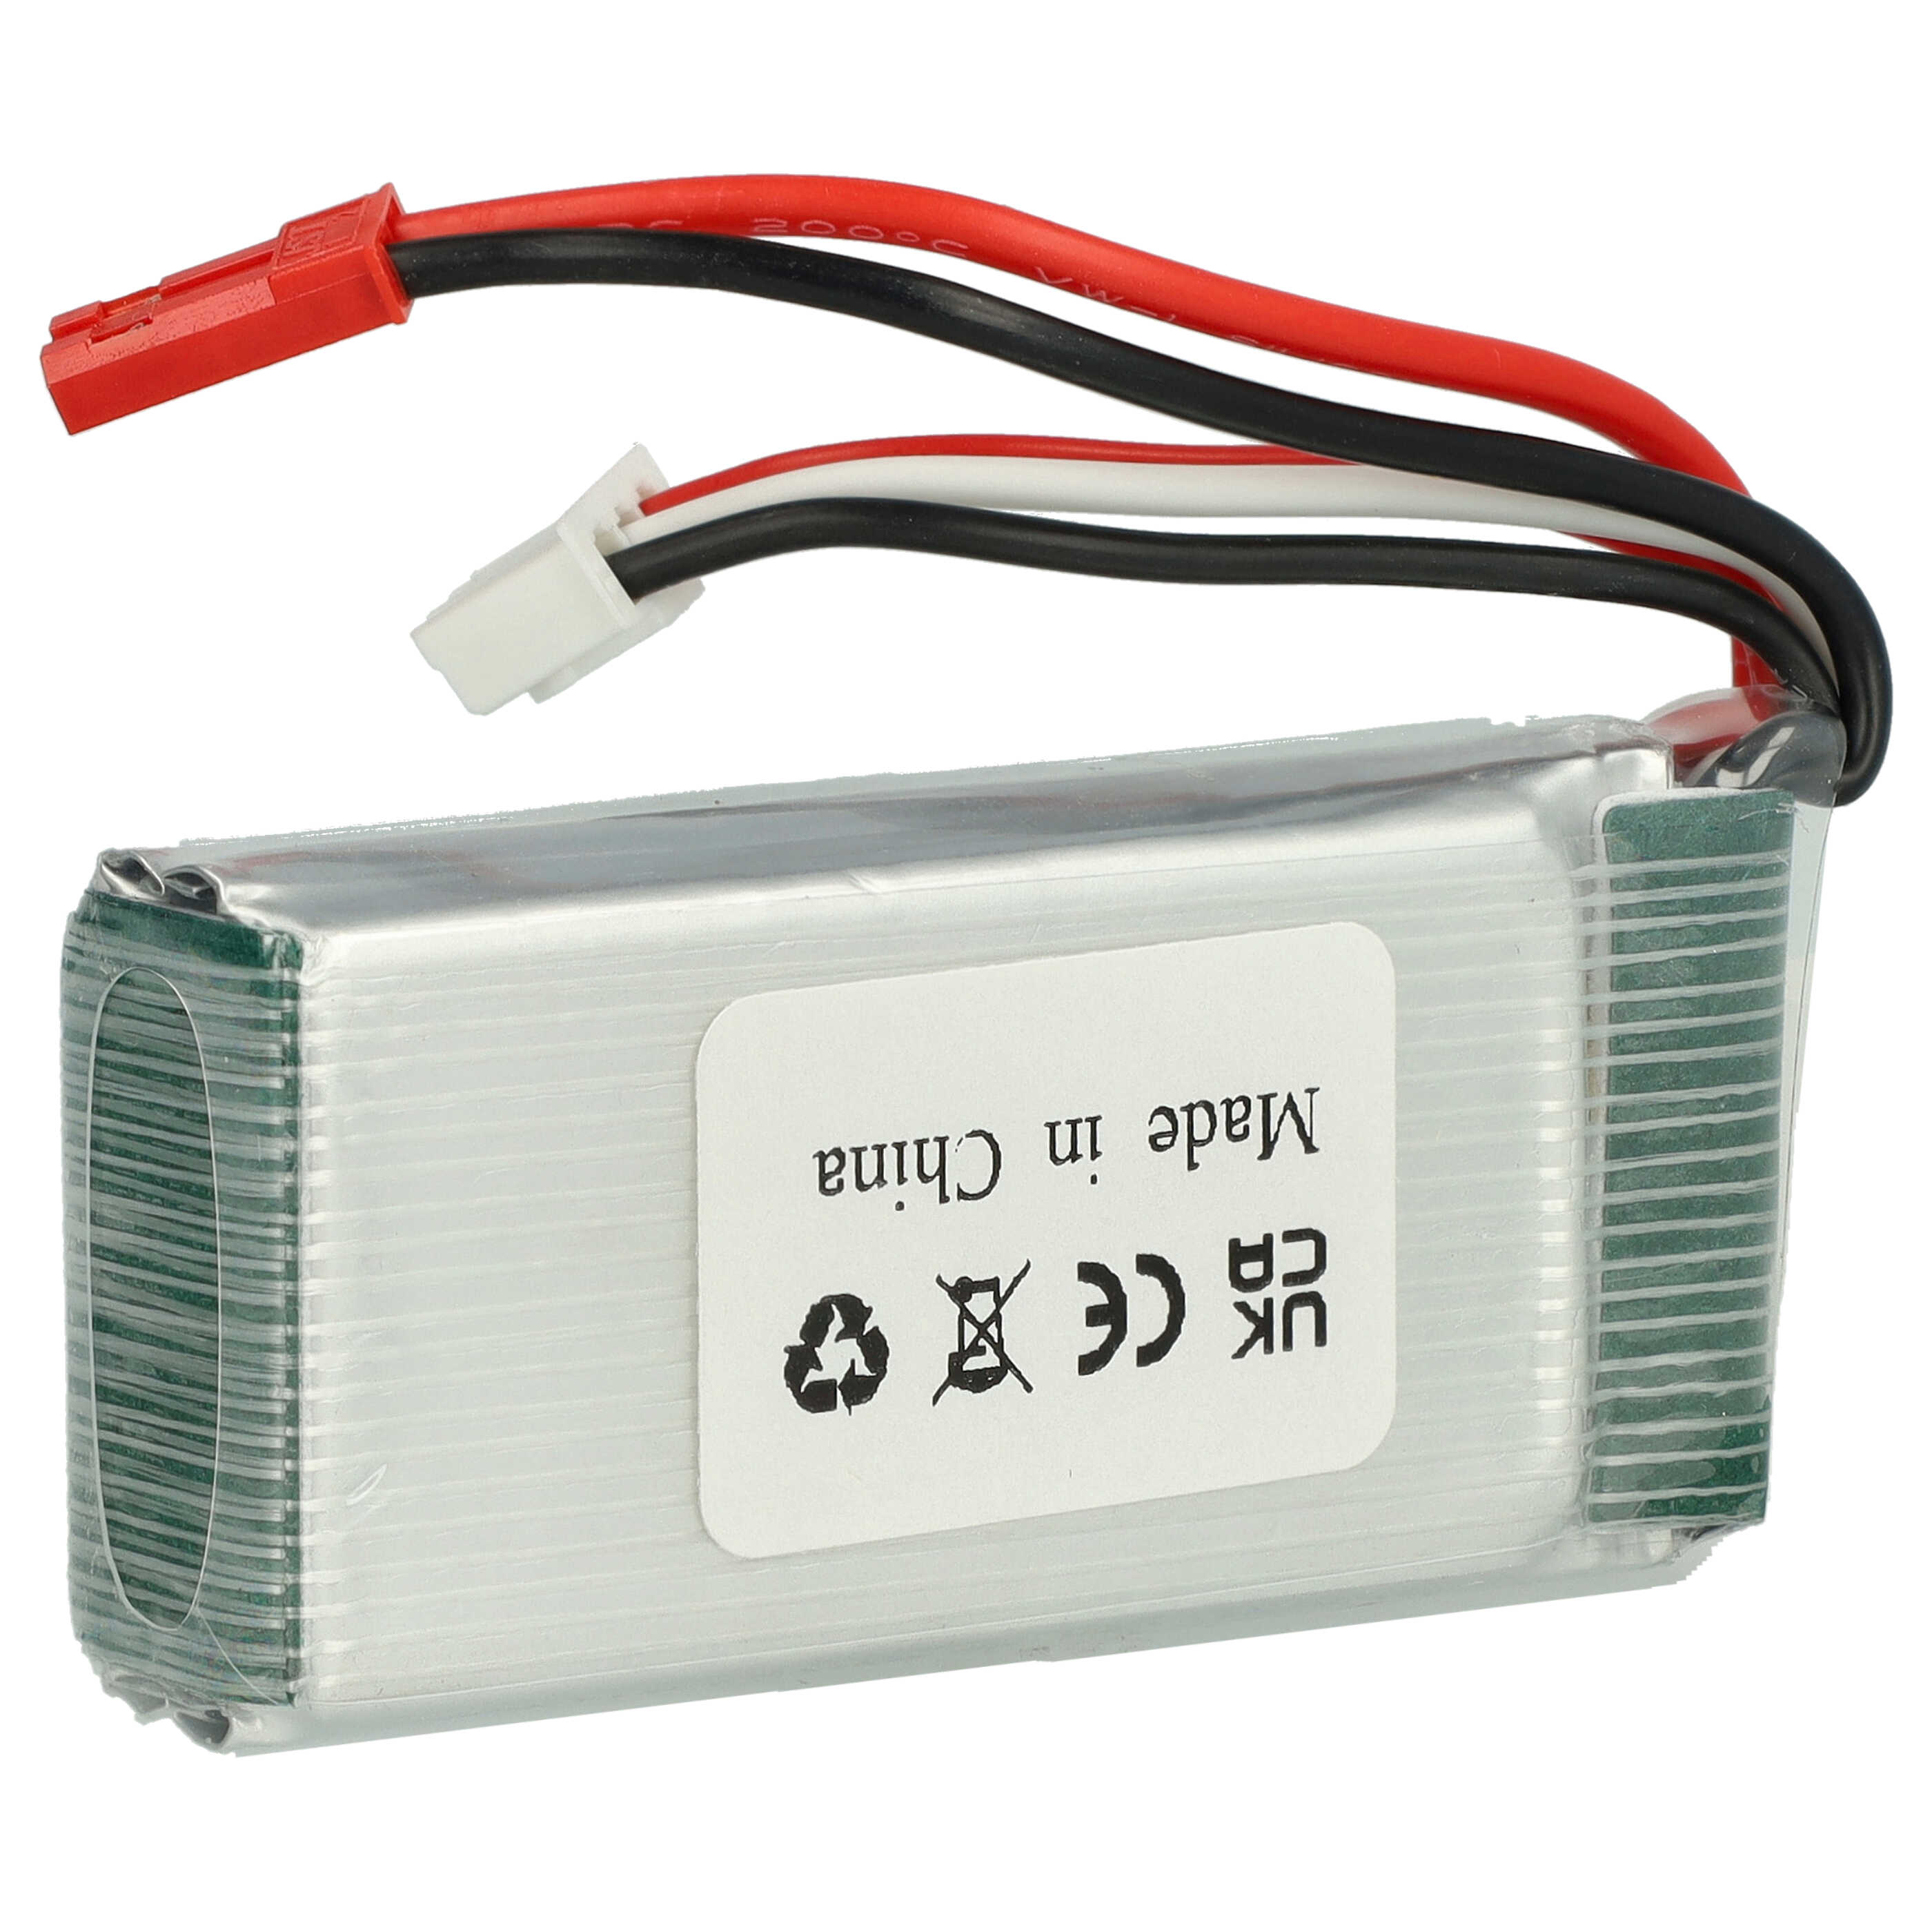 Akumulator do modeli zdalnie sterowanych RC - 1000 mAh 7,4 V LiPo, JST-SYP-2P